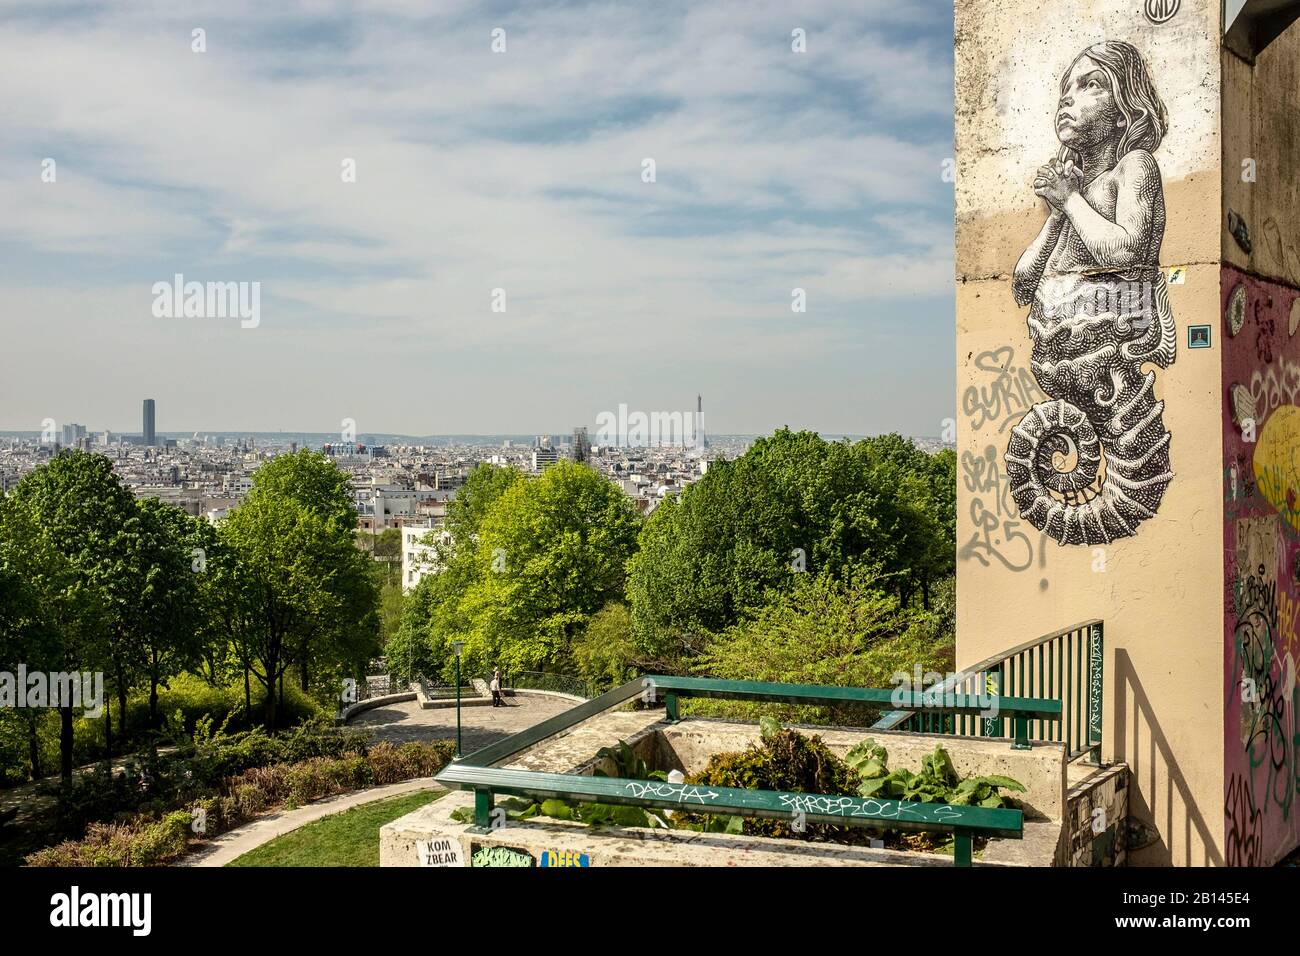 Parc de Belleville, Belleville, 20th arrondissement, Paris Stock Photo